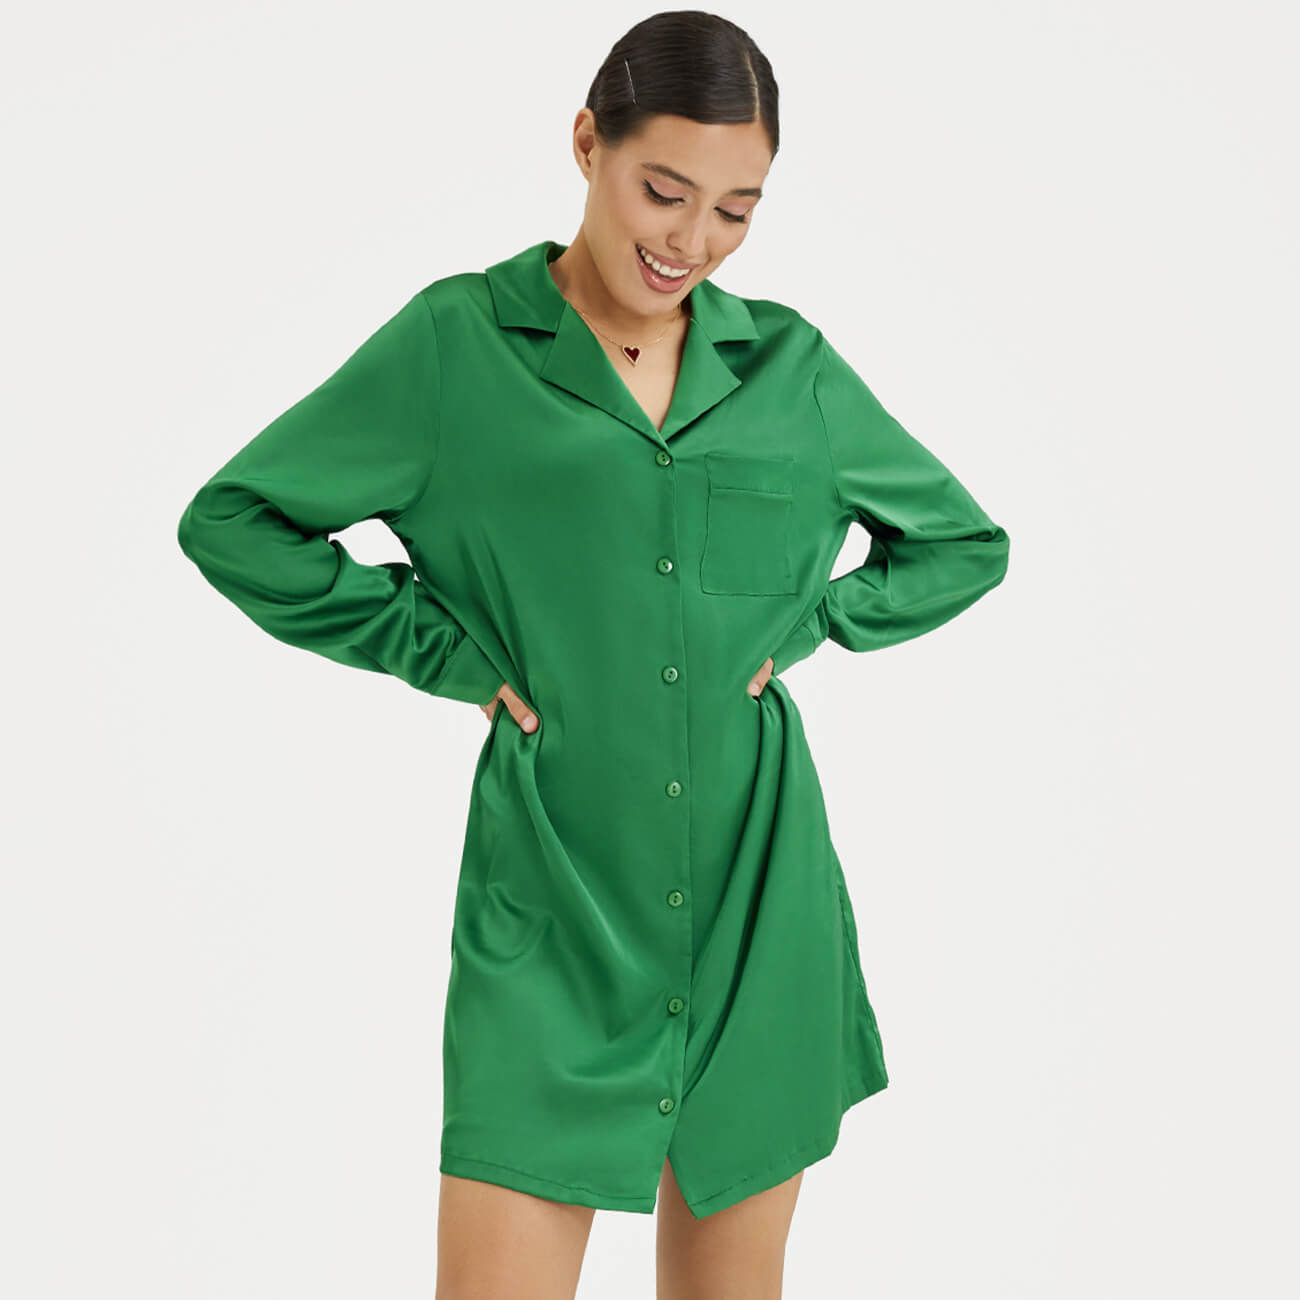 Рубашка женская, р. XL, удлиненная, с длинным рукавом, полиэстер/эластан, зеленая, Madeline рубашка женская р xl с коротким рукавом полиэстер эластан зеленая madeline